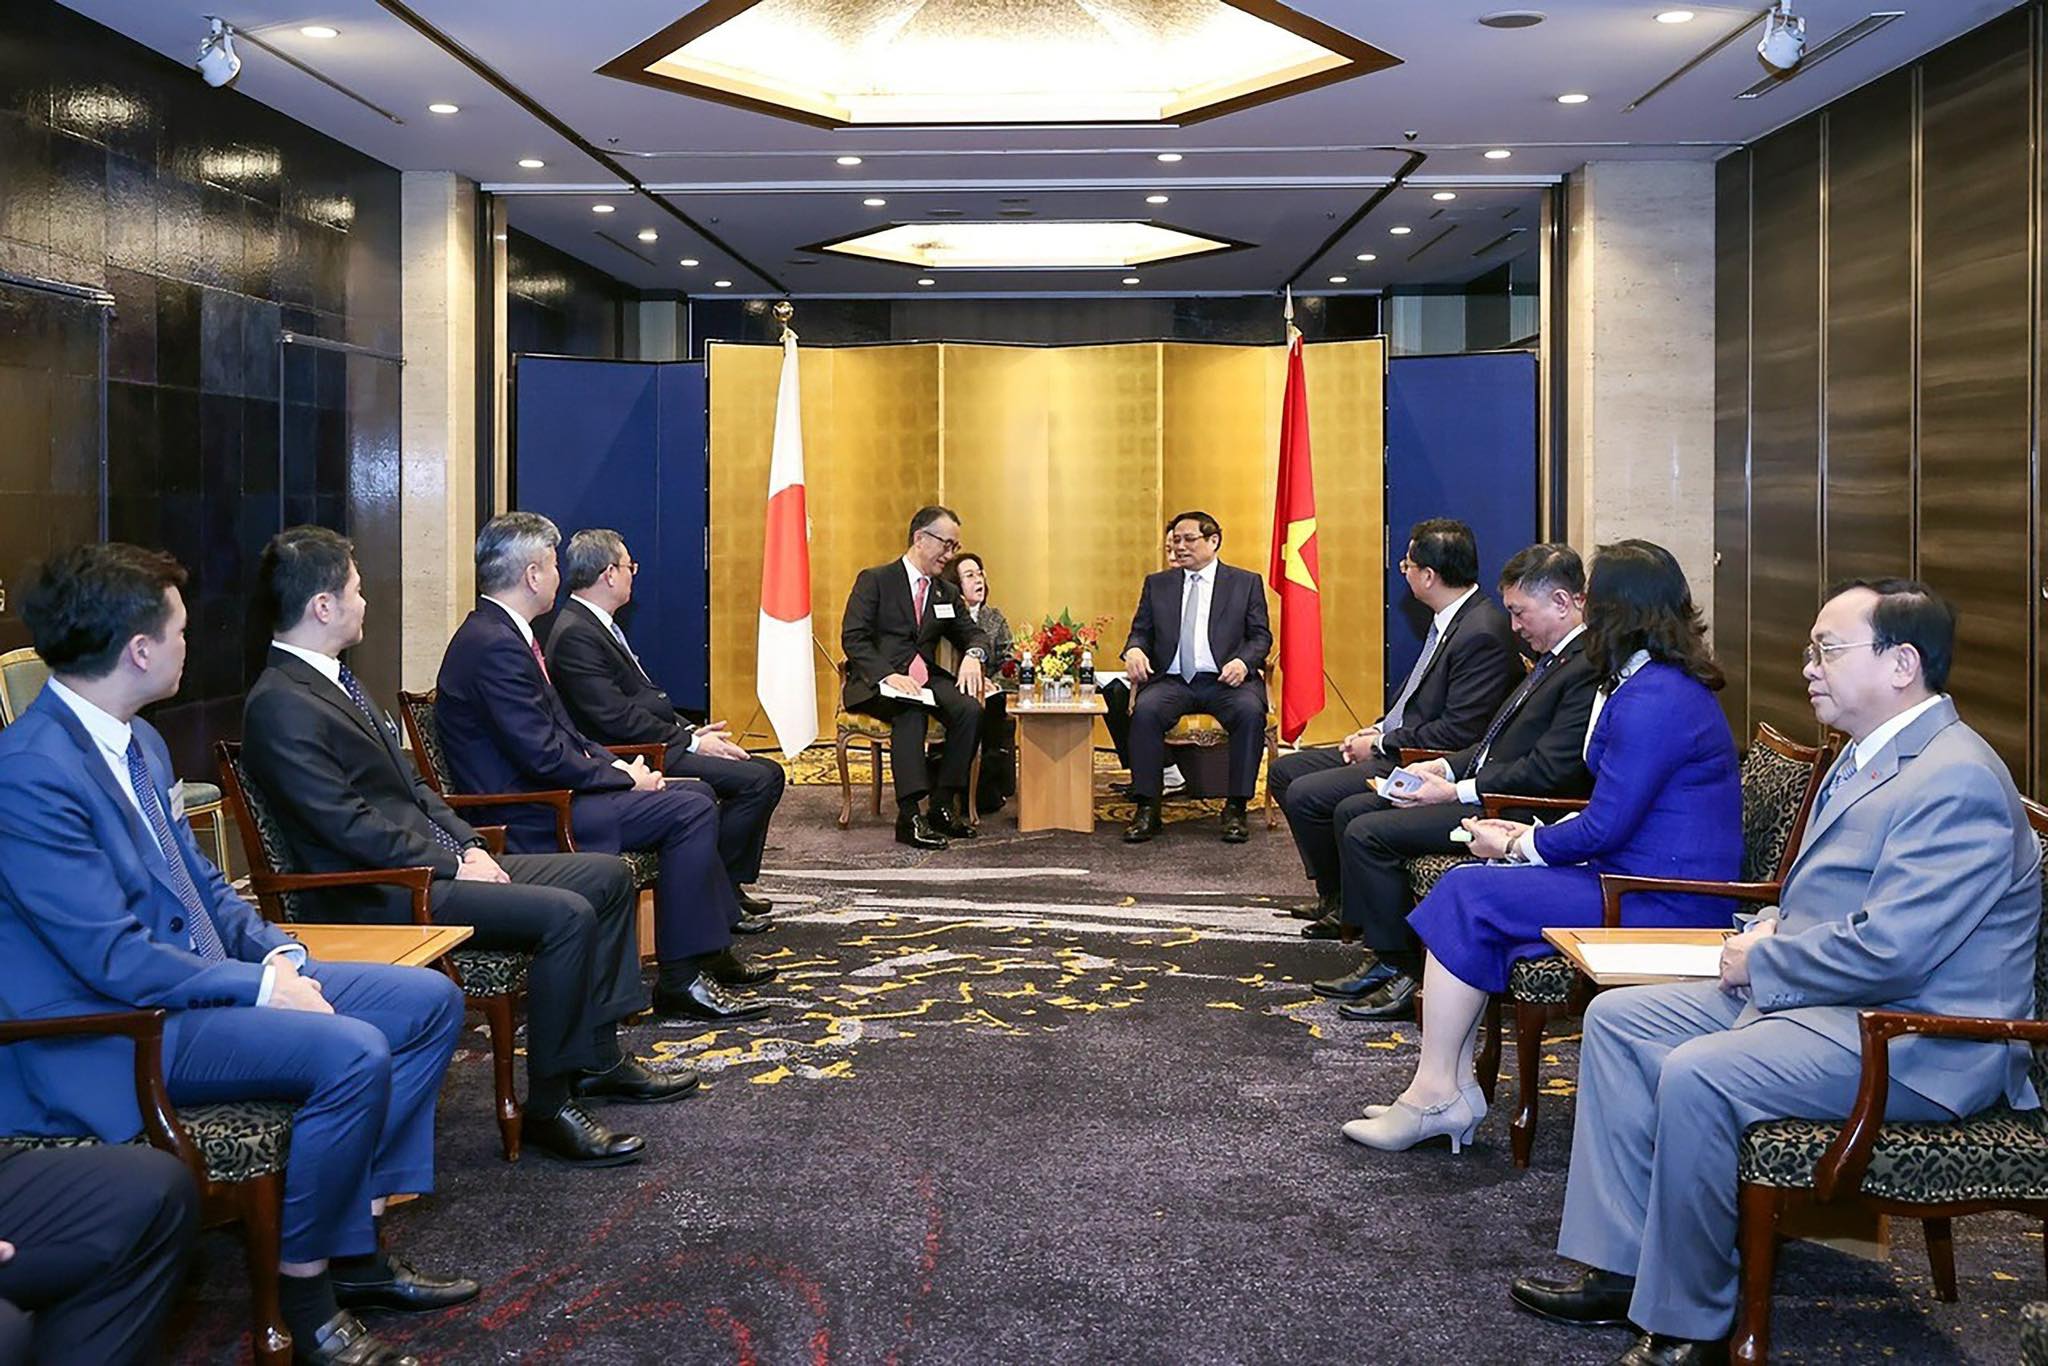 Kinh tế - VietinBank phối hợp tổ chức Tọa đàm của Thủ tướng Chính phủ với các tập đoàn Nhật Bản (Hình 4).